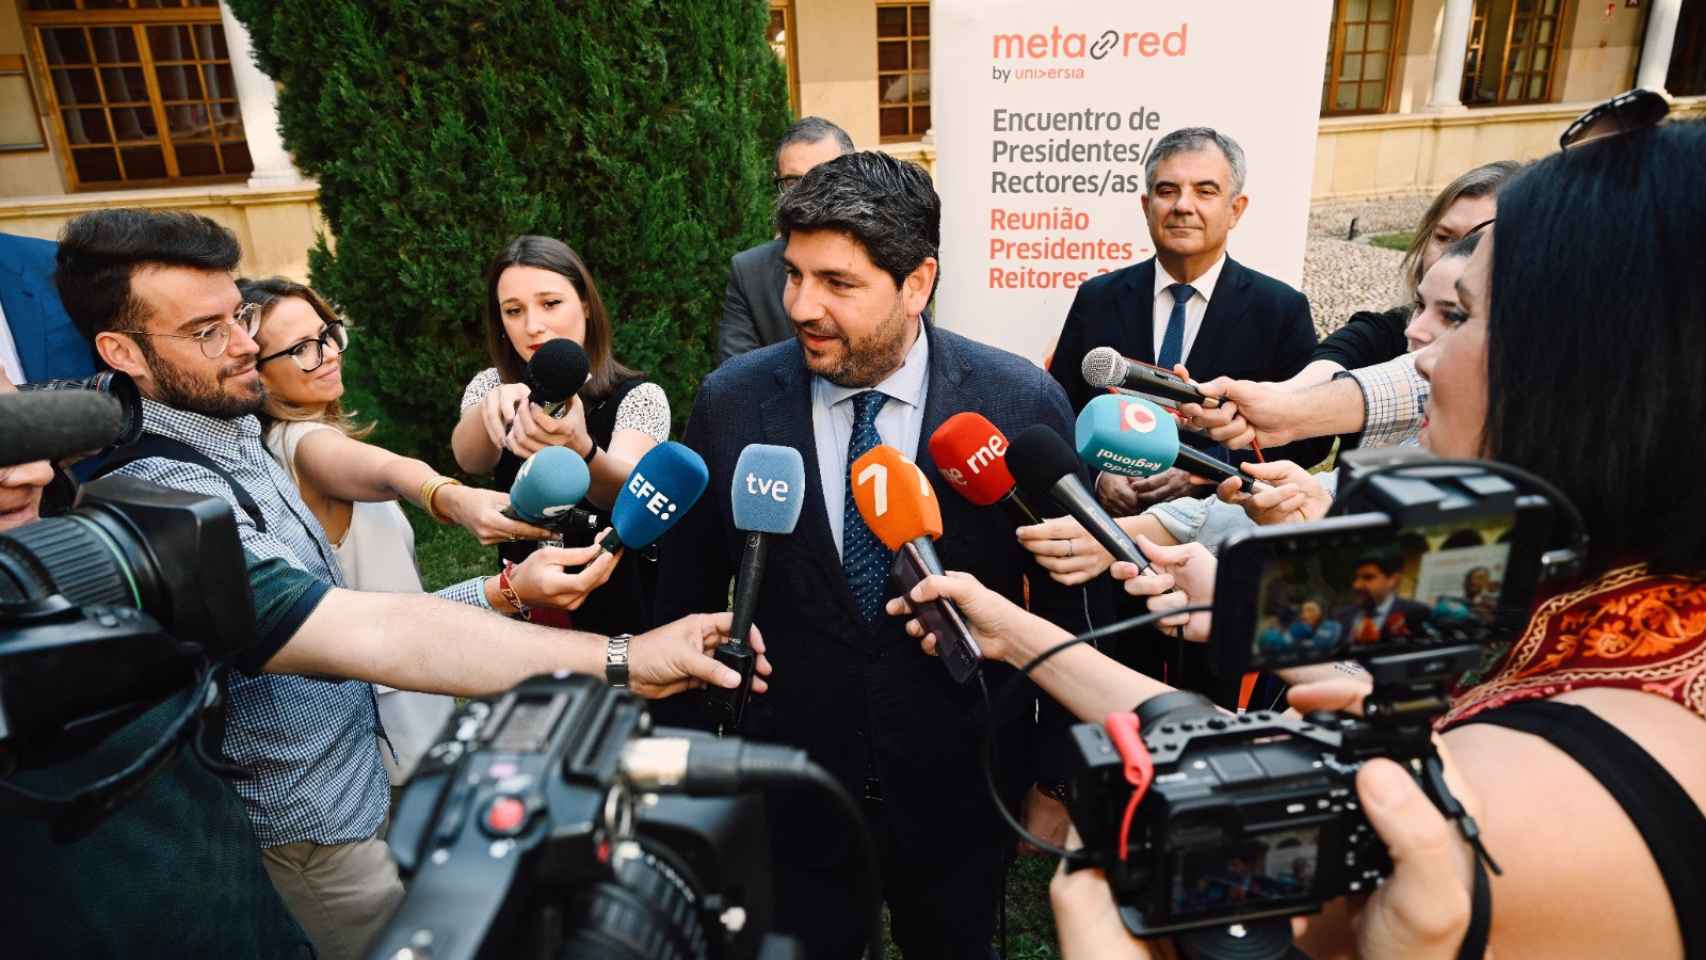 El presidente de la Región de Murcia, este jueves, atendiendo a los medios de comunicación en un acto.